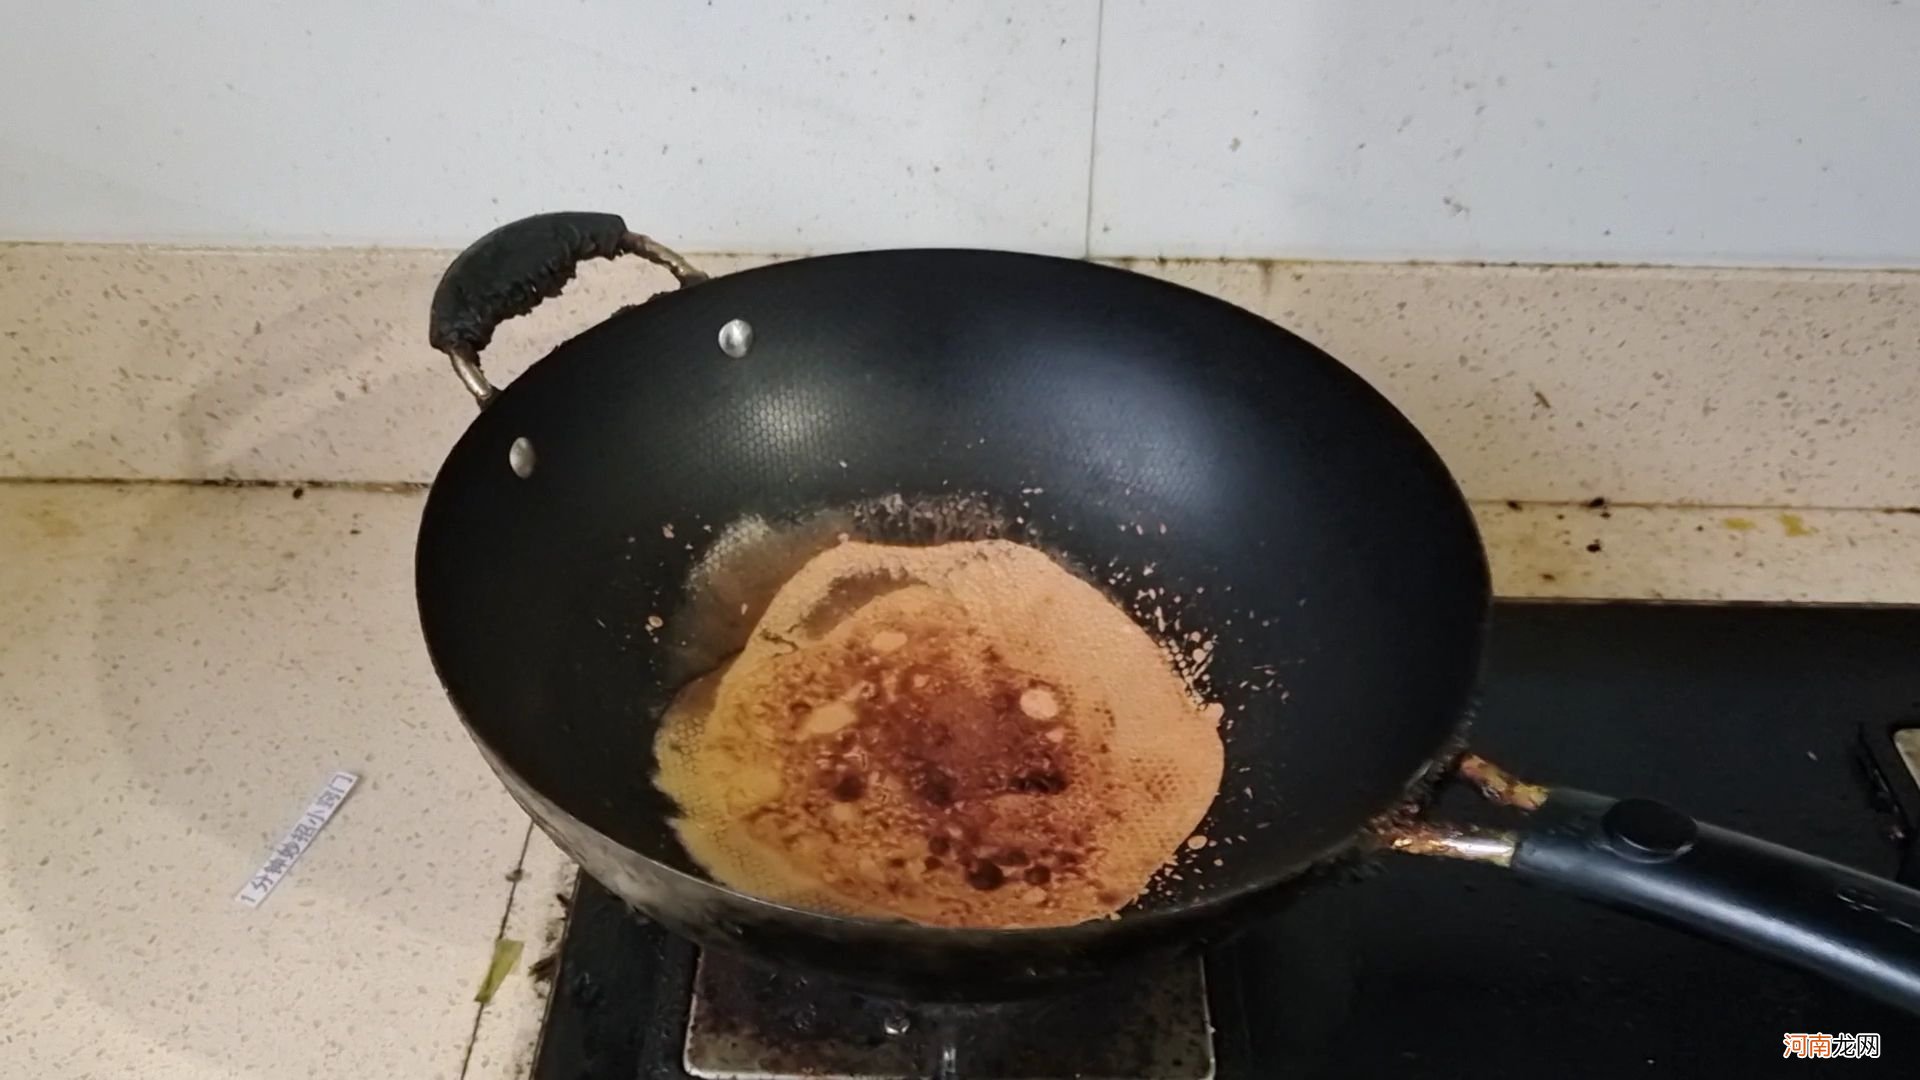 铁锅生锈怎么办 铁锅生锈怎么办呀用什么办法最好呢